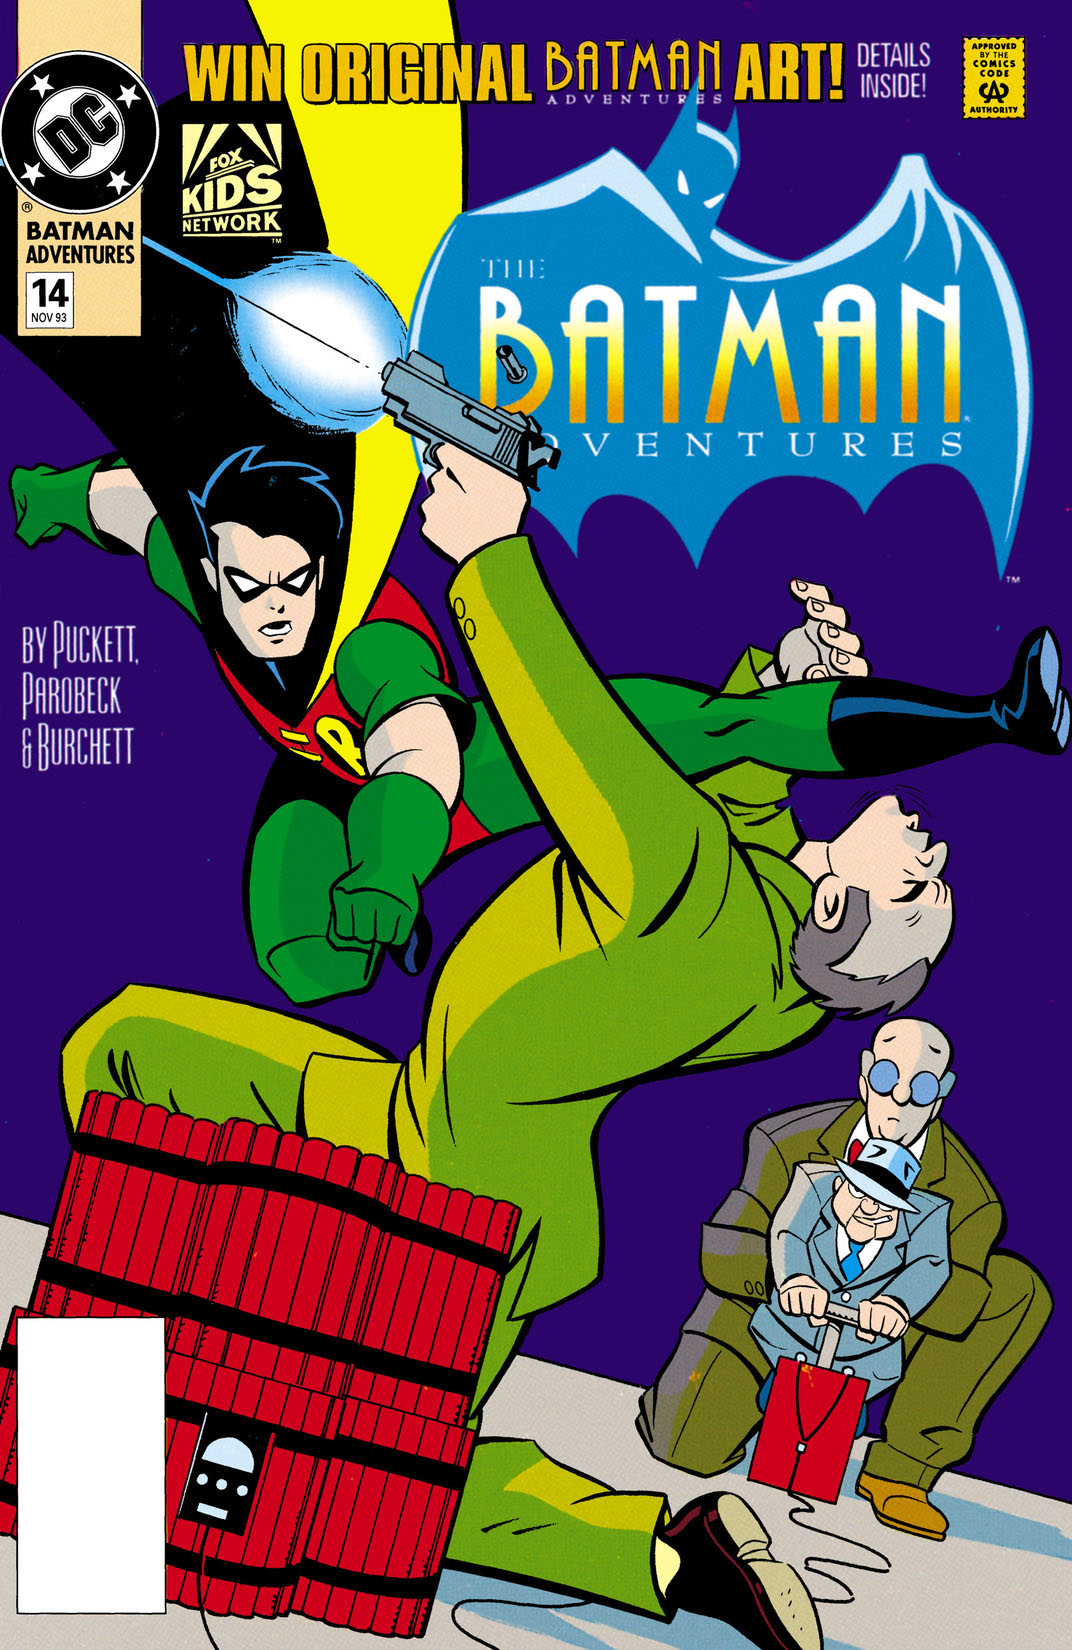 The Batman Adventures #14 preview images